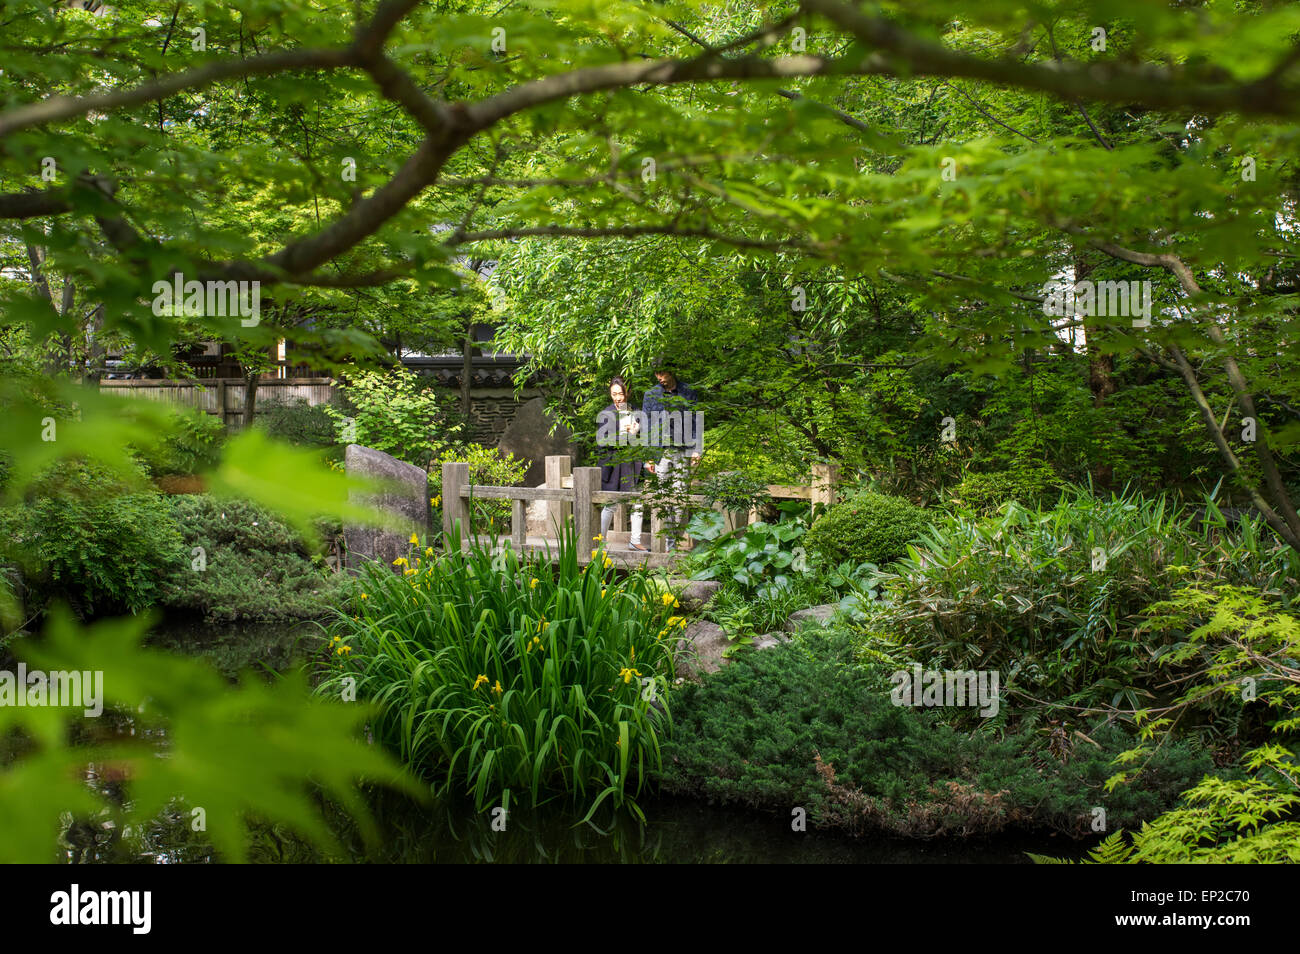 Rakusuien tea house and garden, Fukuoka, Kyushu, Japan. Stock Photo